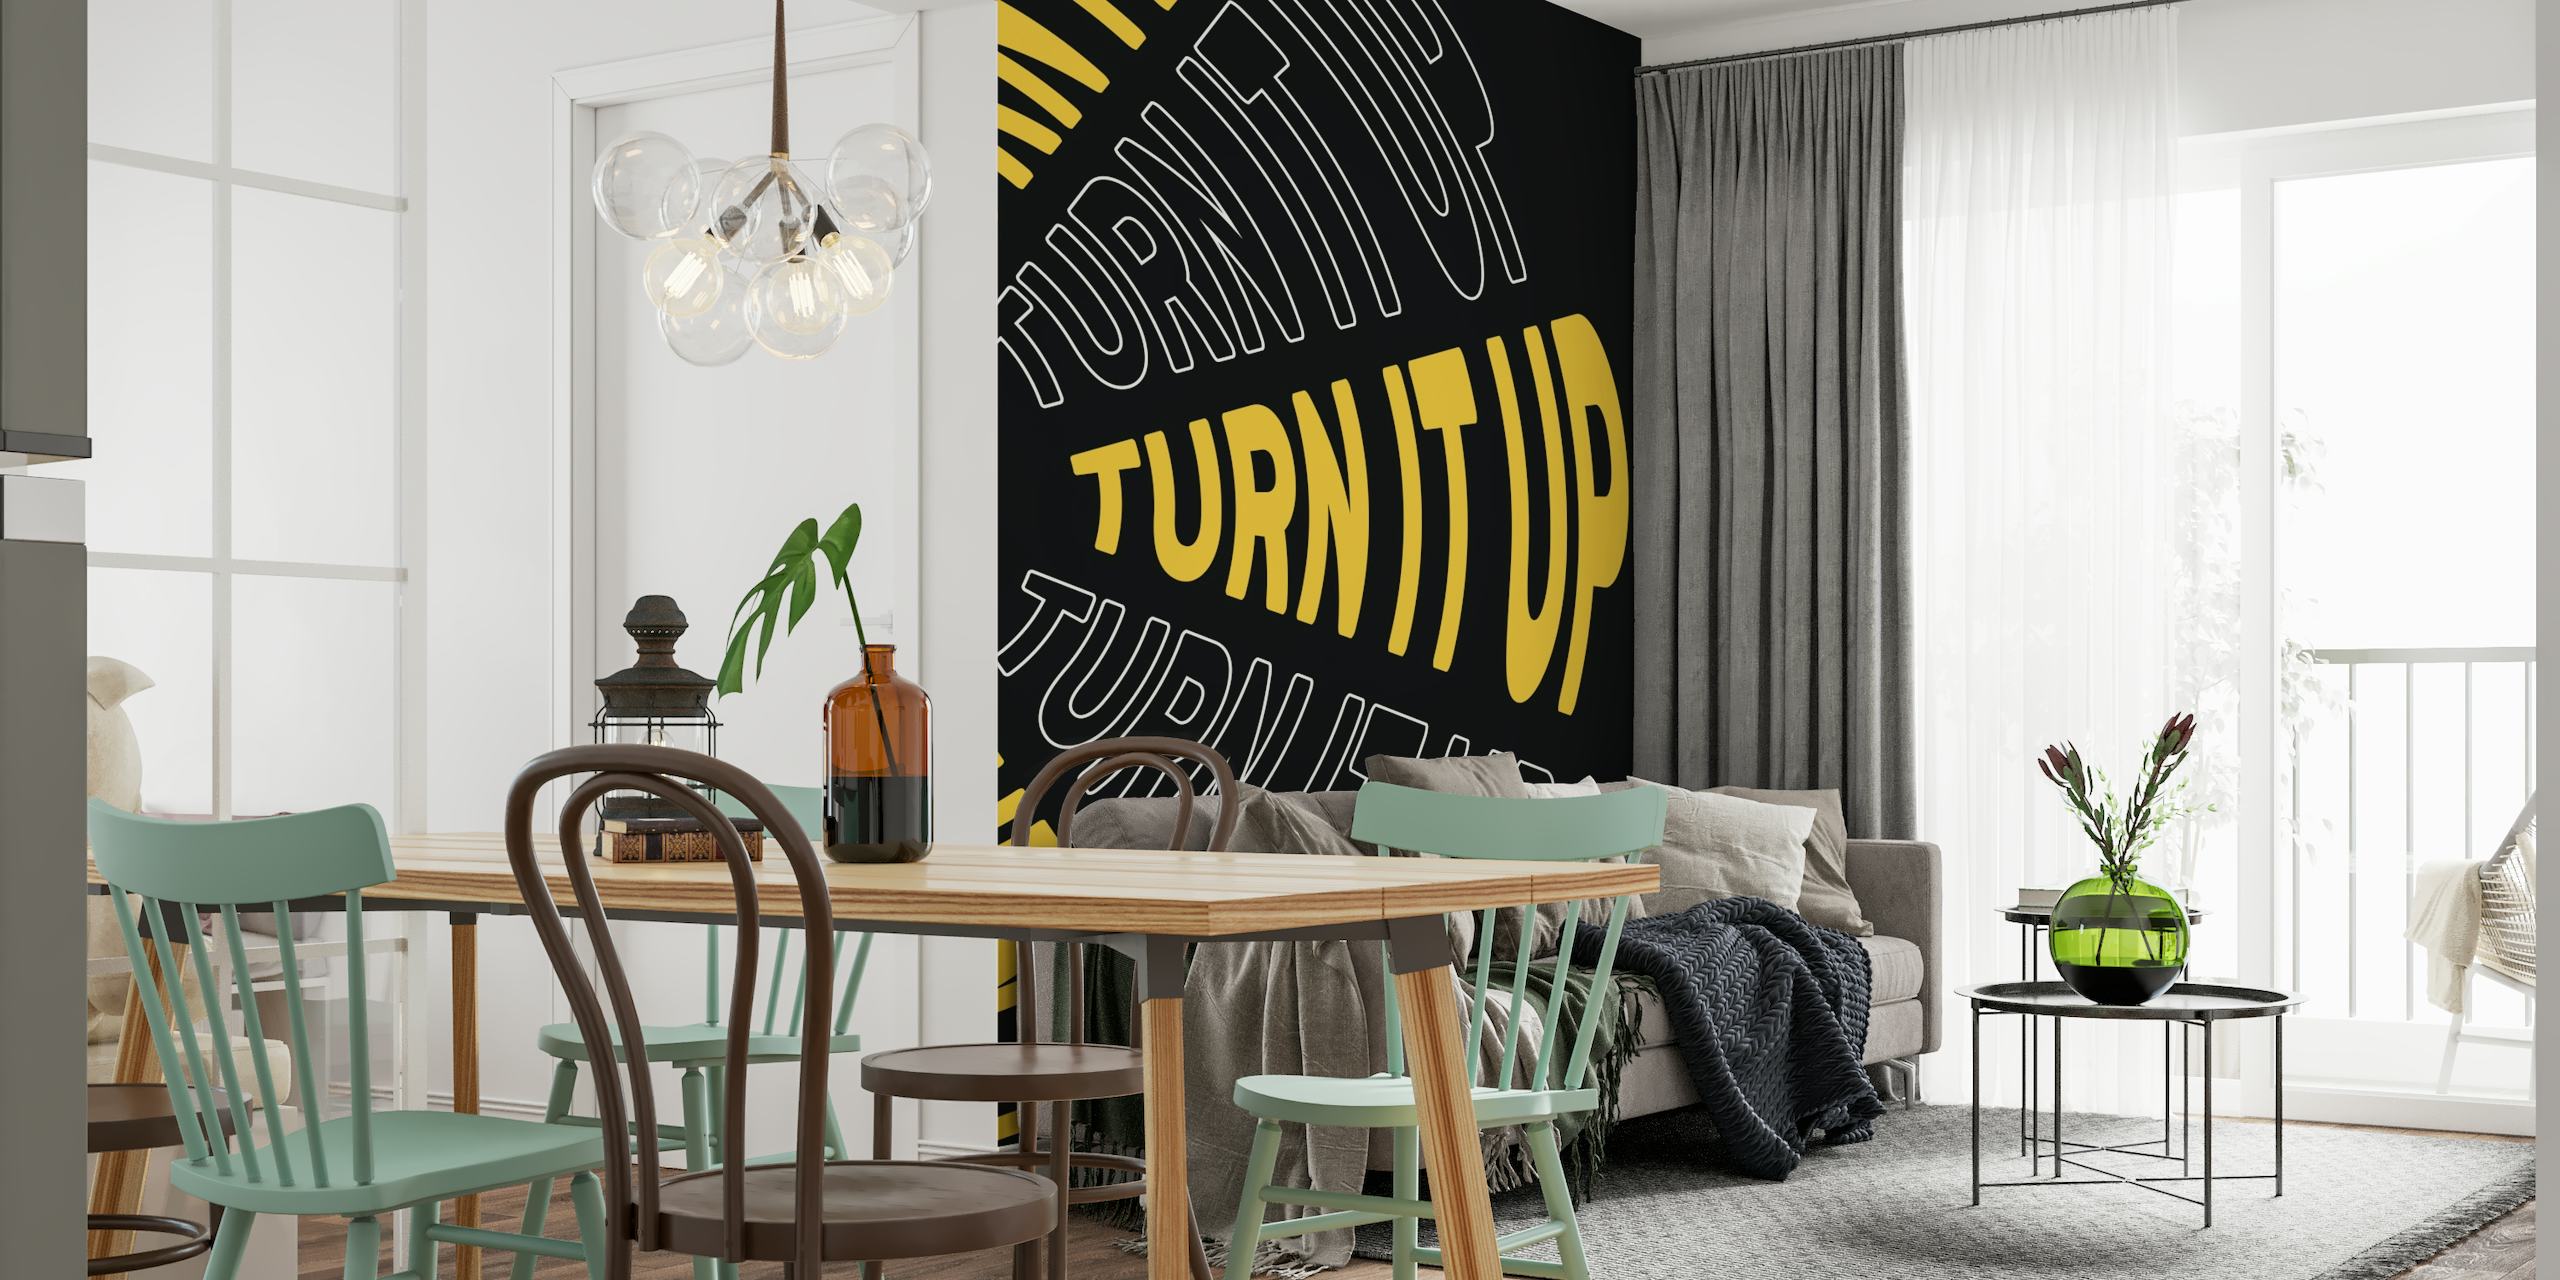 Turn It Up wallpaper